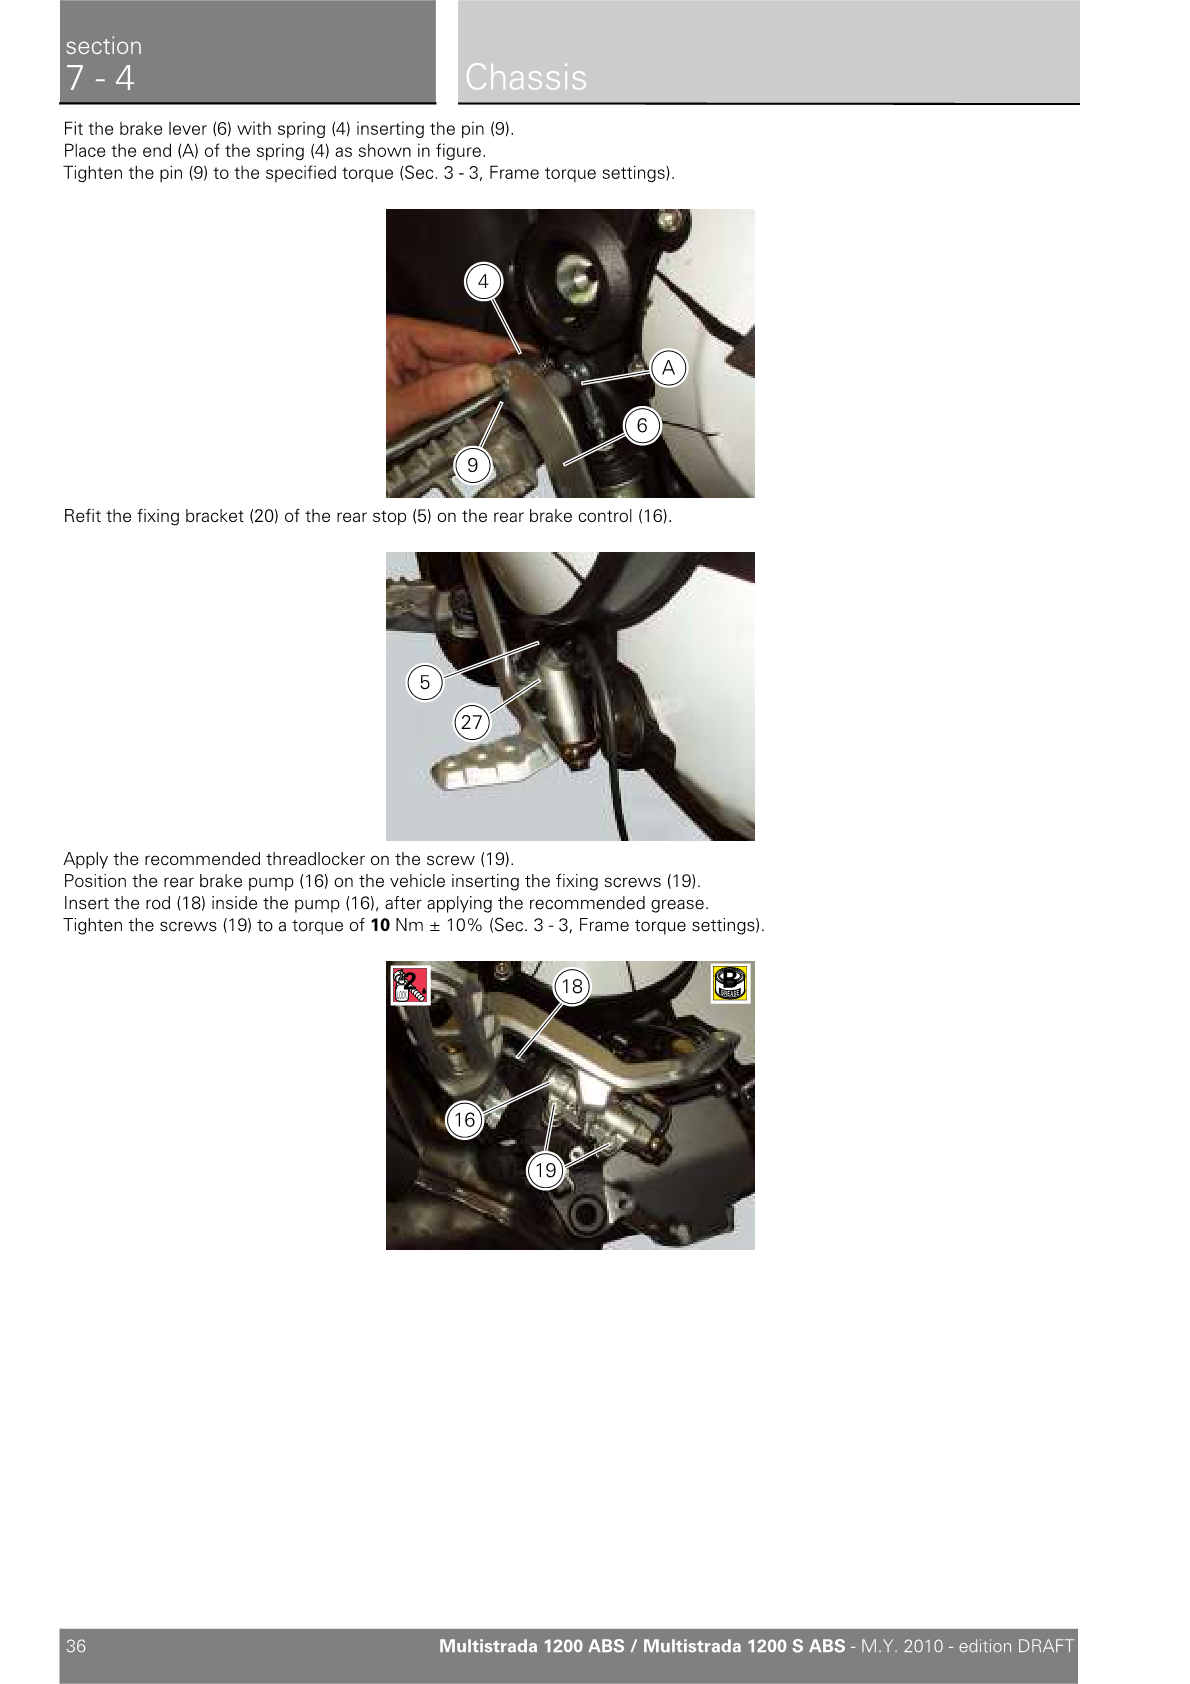 2010-2014 Ducati Multistrada MTS 1200S Touring Twin Manual